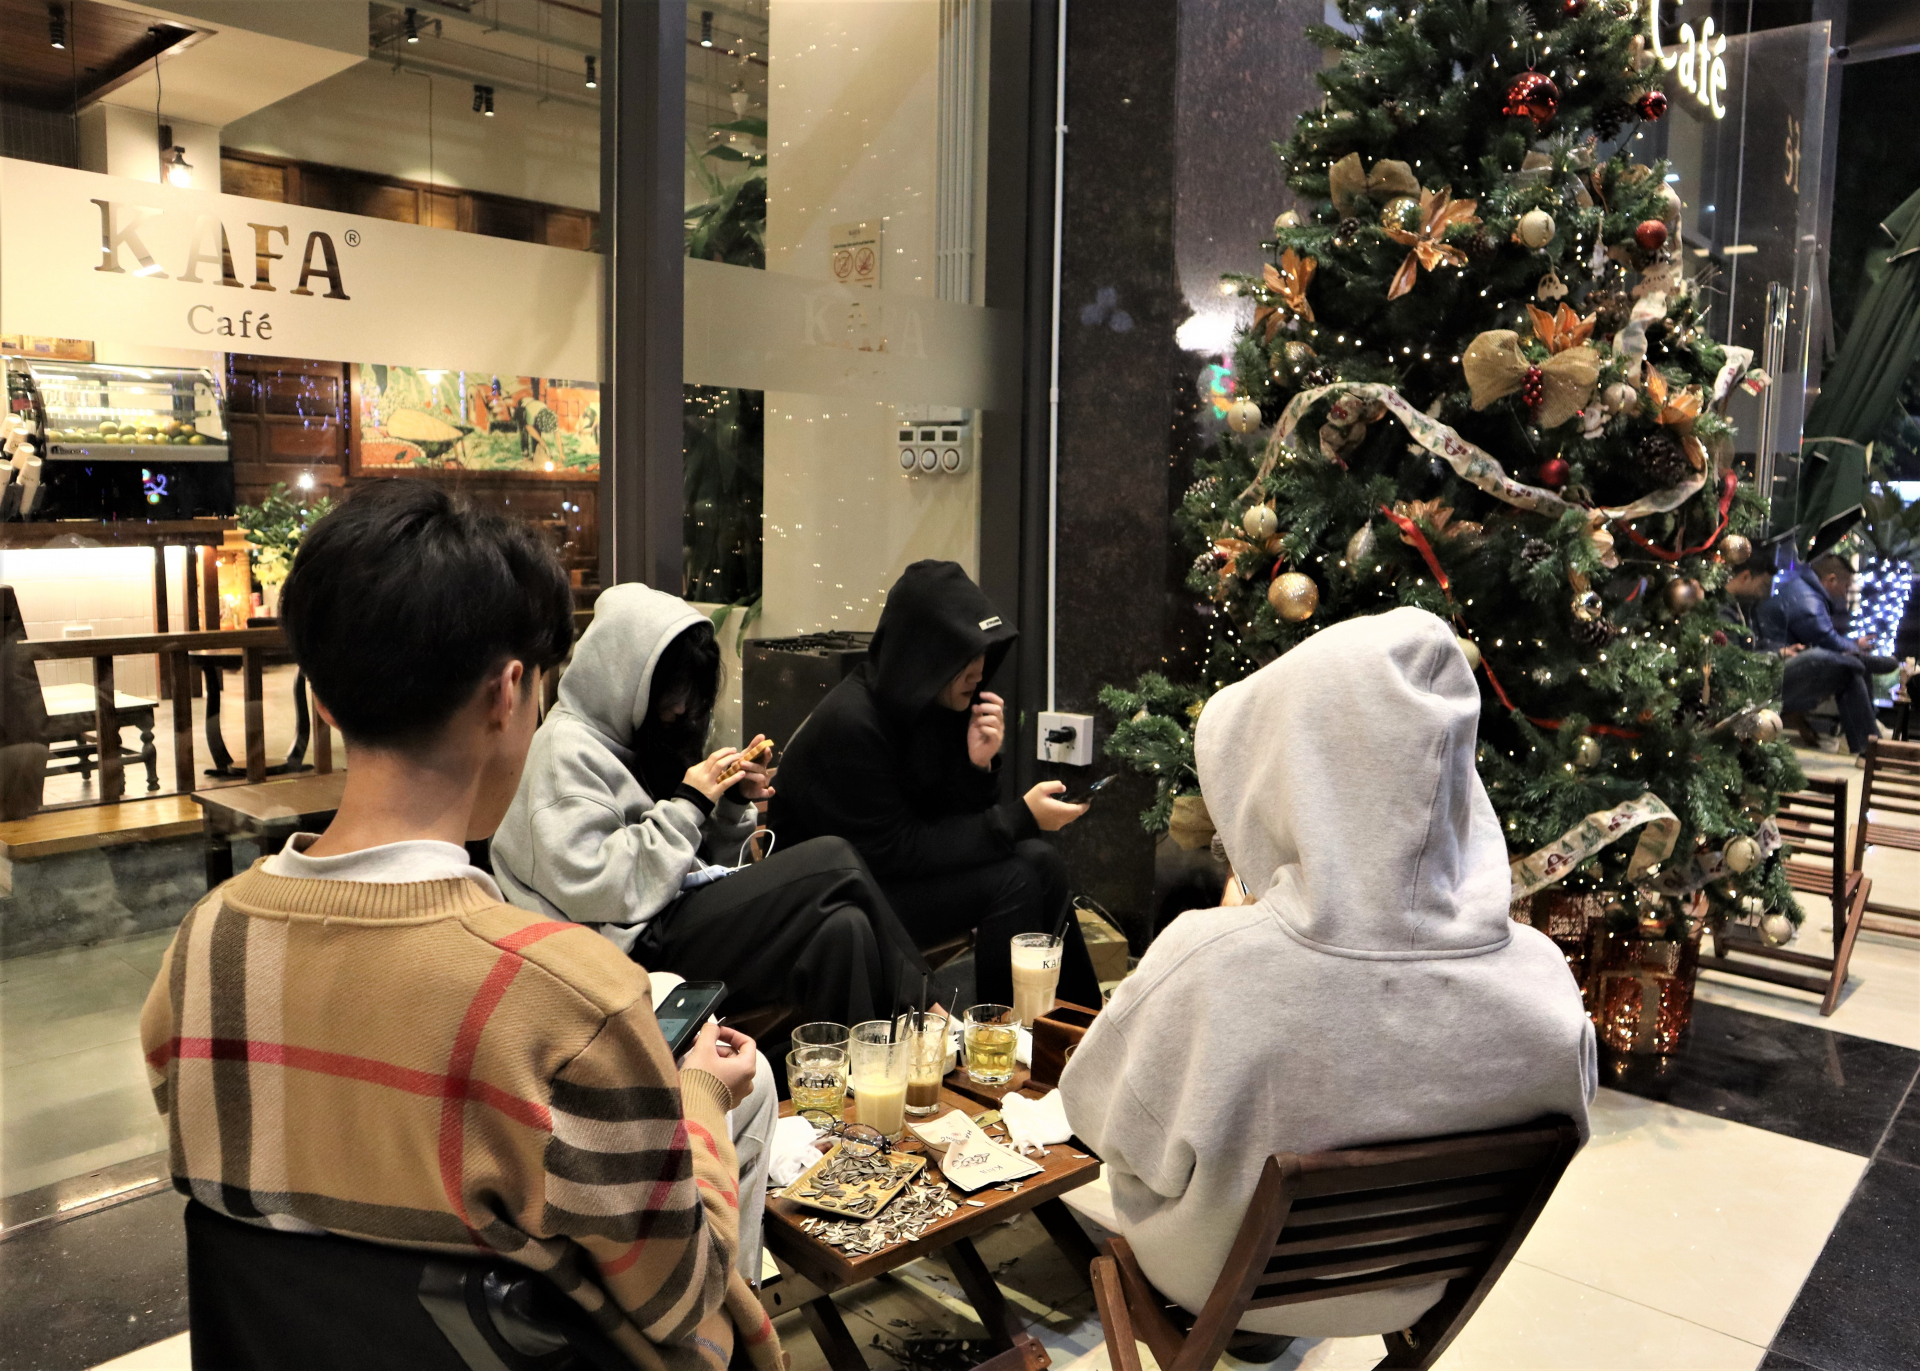 Một số các bạn thì lại chọn quán cà phê là nơi tận hưởng không khí đêm Noel để quây quần, tâm sự sau những giờ học ở trường.